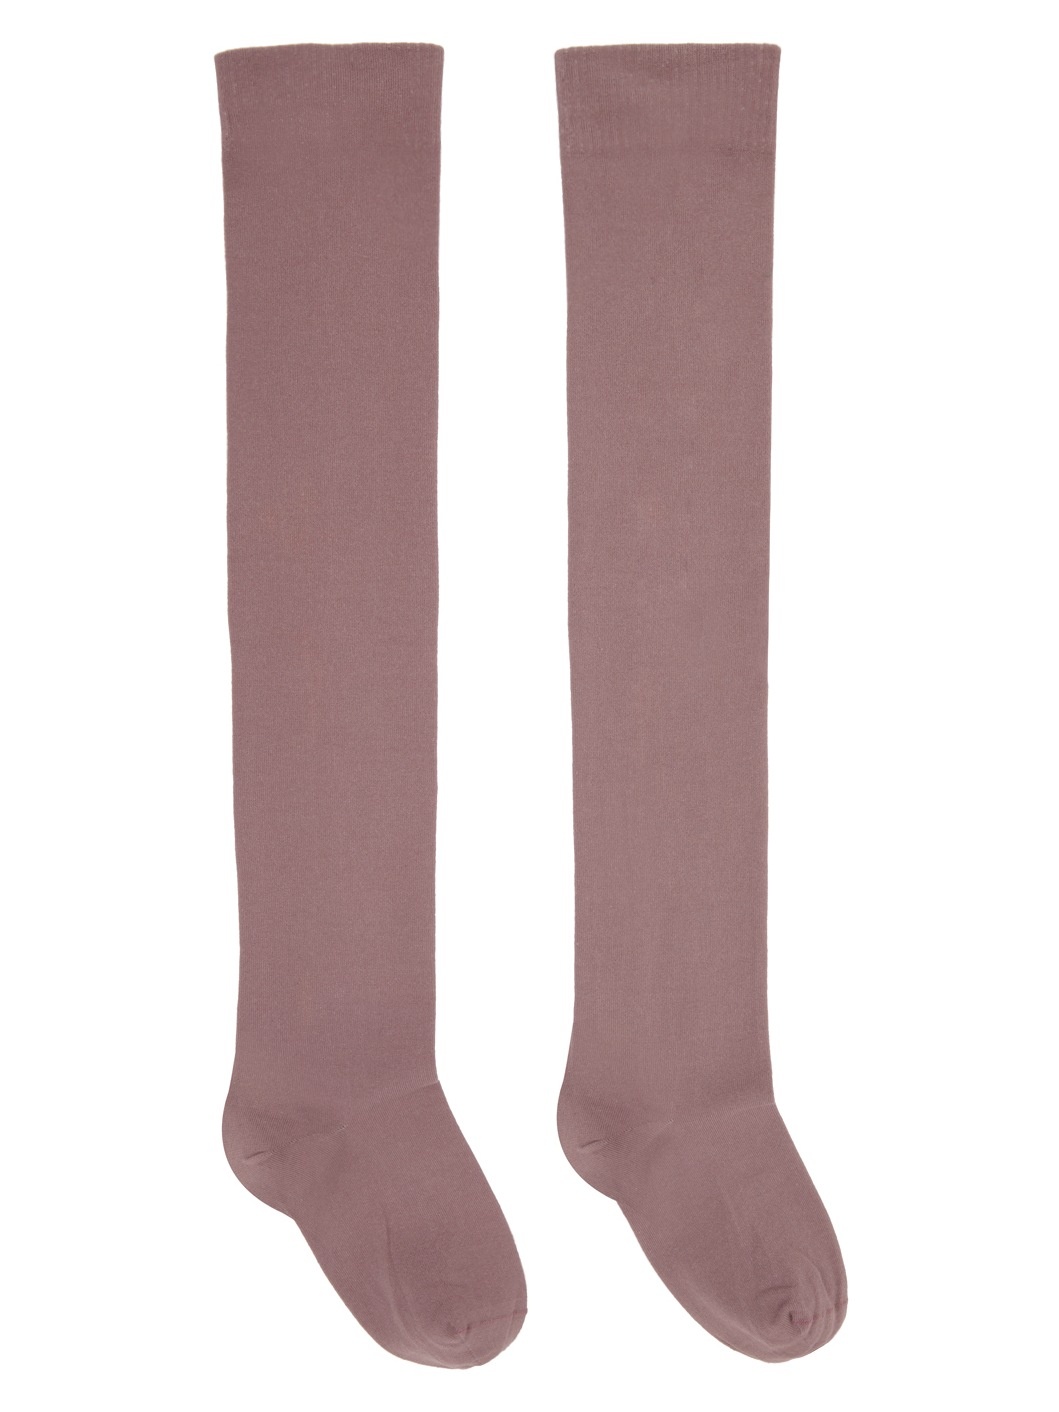 Pink Semi-Sheer Socks - 1